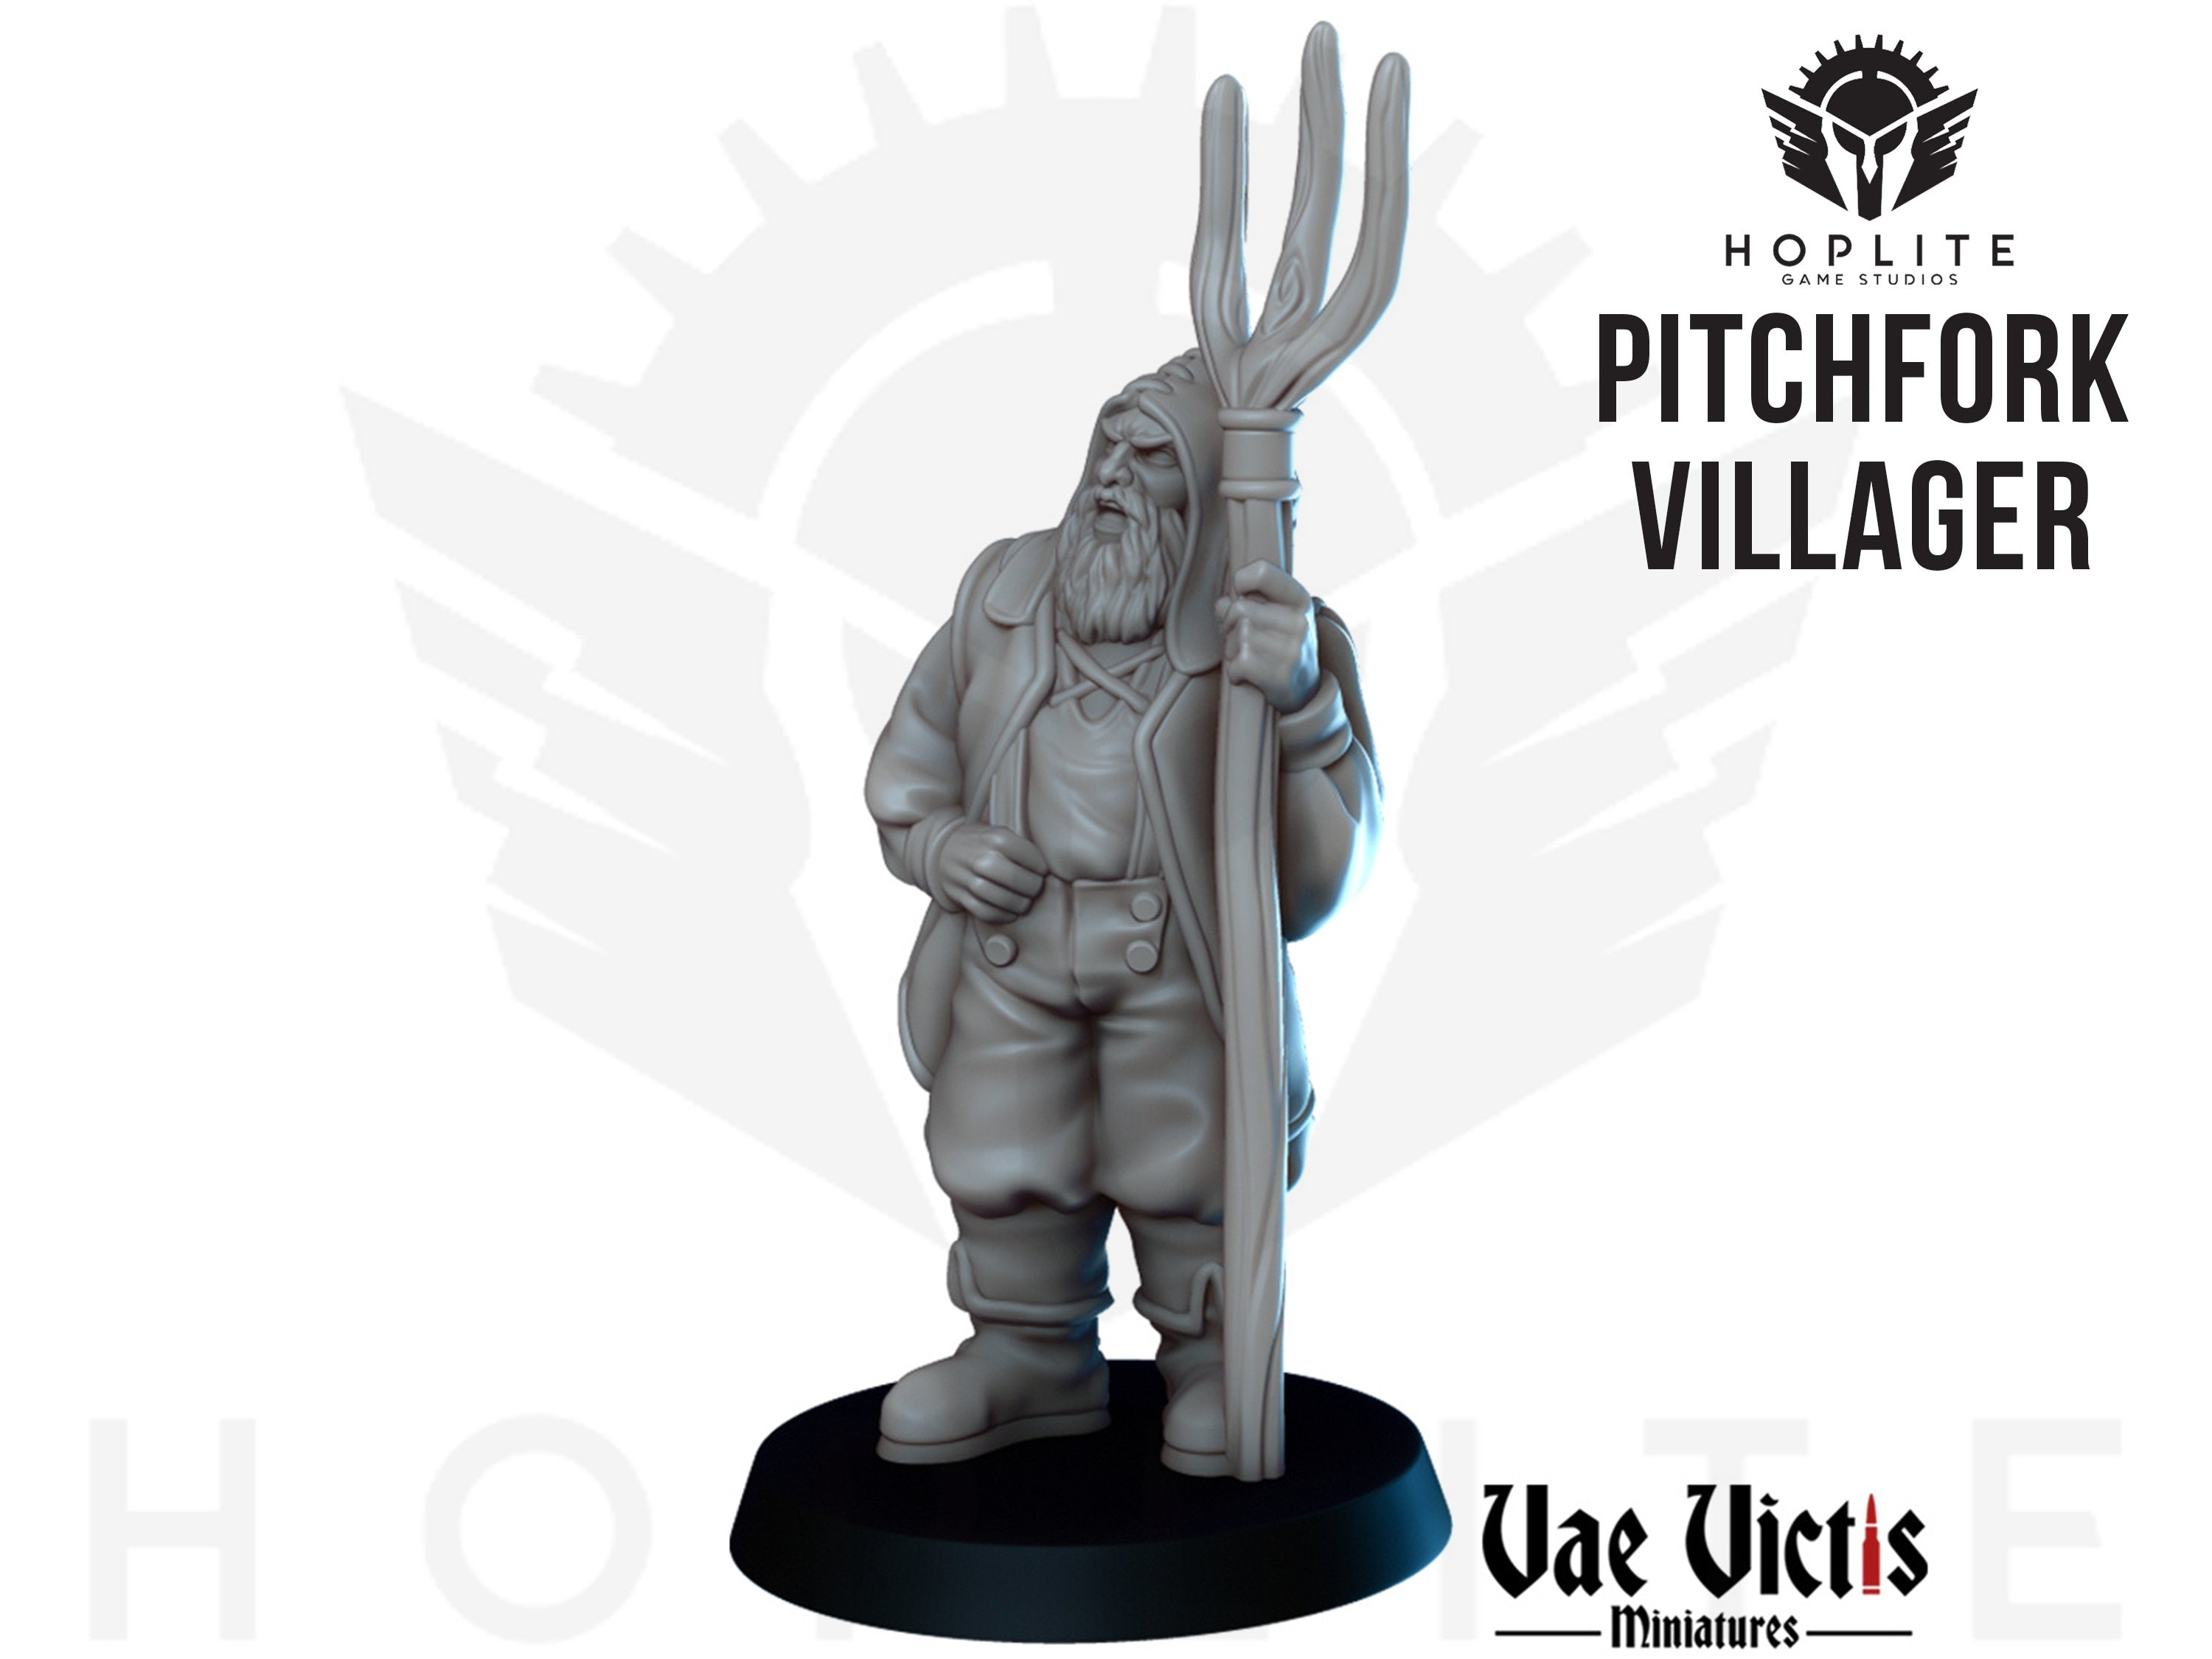 The Pitchfork Villager